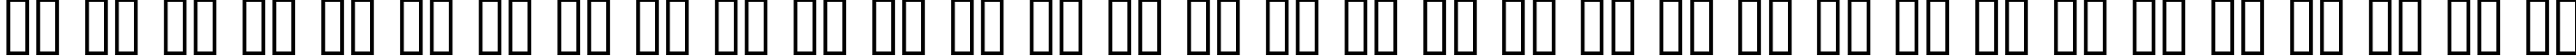 Пример написания русского алфавита шрифтом Schindler